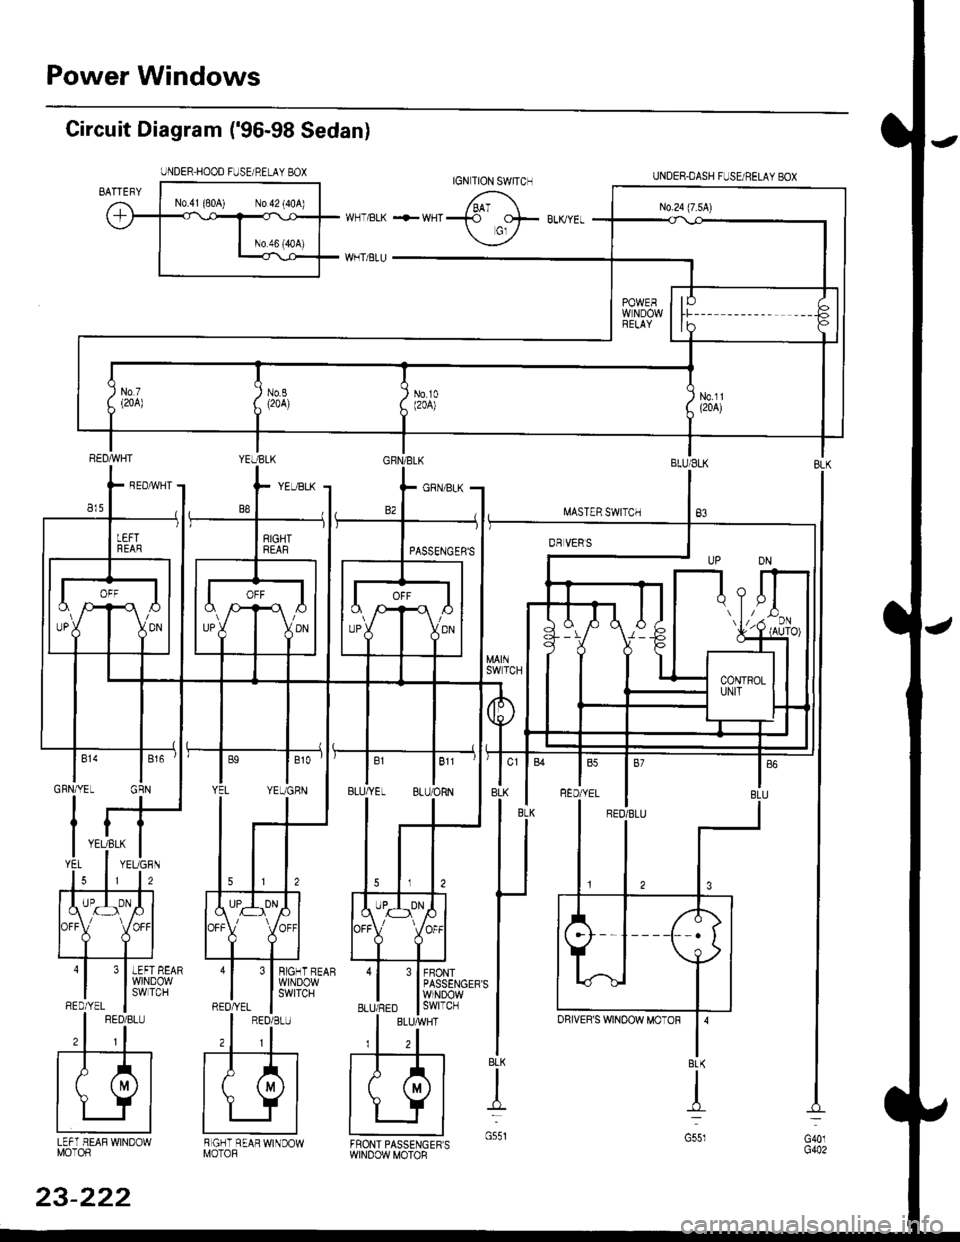 HONDA CIVIC 1999 6.G Workshop Manual Power Windows
Circuit Diagram (96-98 Sedan)
UNDER HOOD FUSE/RELAY BOX
I.iASTER SWITCH
UNDER.DASH FUSUBELAYEOX
BLU/ELK
B3
3 I BIGHT BEAR
l$,]ilP3,y
FBONTPASSENGERSWINDOWswtTcH
BLK
t
G551LEFT HEAF WI